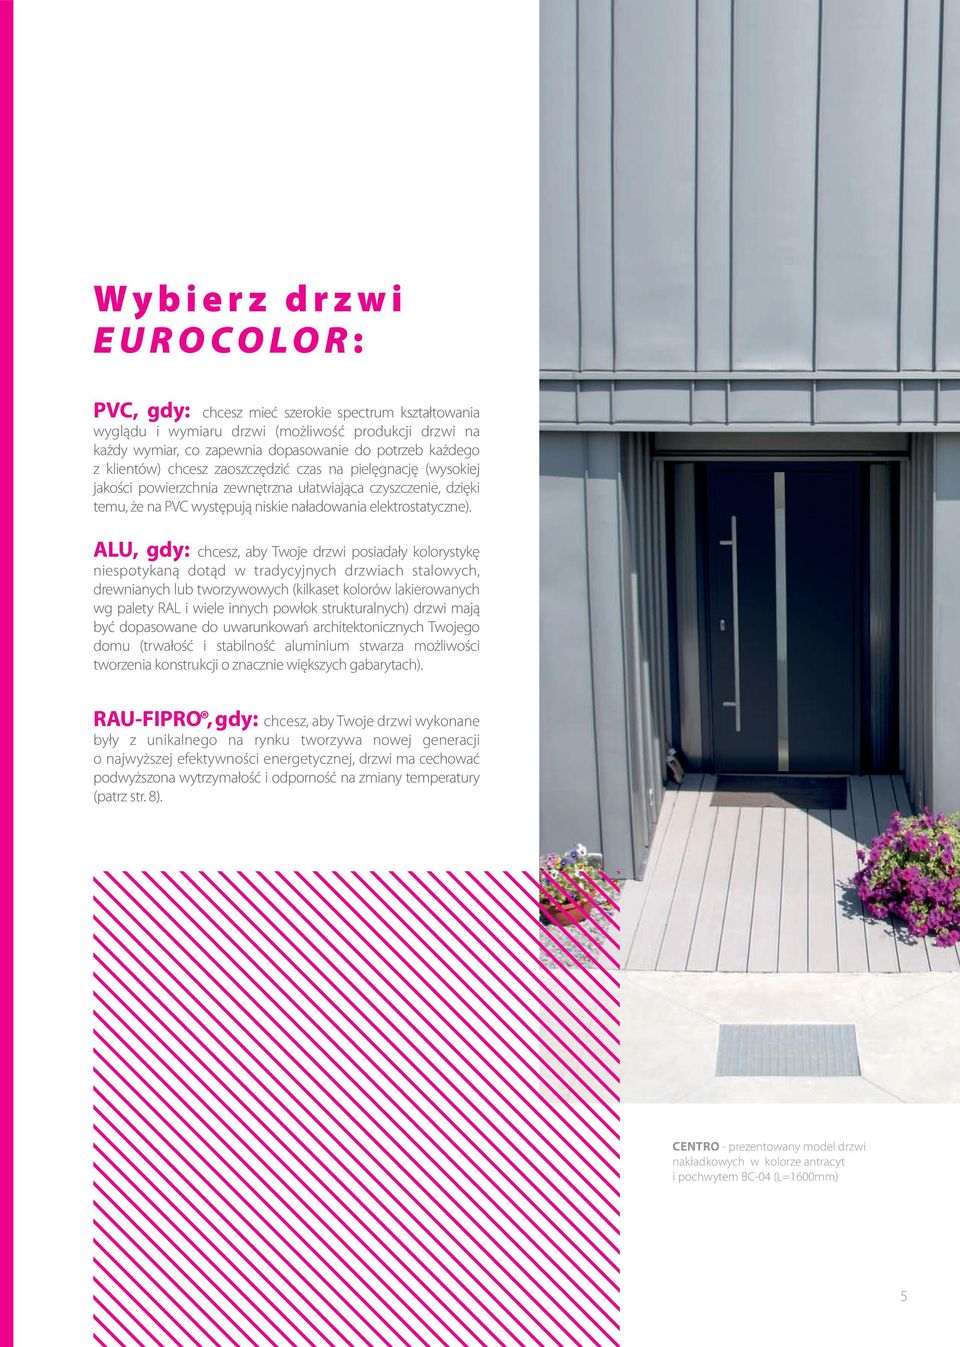 ALU, gdy: chcesz, aby Twoje drzwi posiadały kolorystykę niespotykaną dotąd w tradycyjnych drzwiach stalowych, drewnianych lub tworzywowych (kilkaset kolorów lakierowanych wg palety RAL i wiele innych